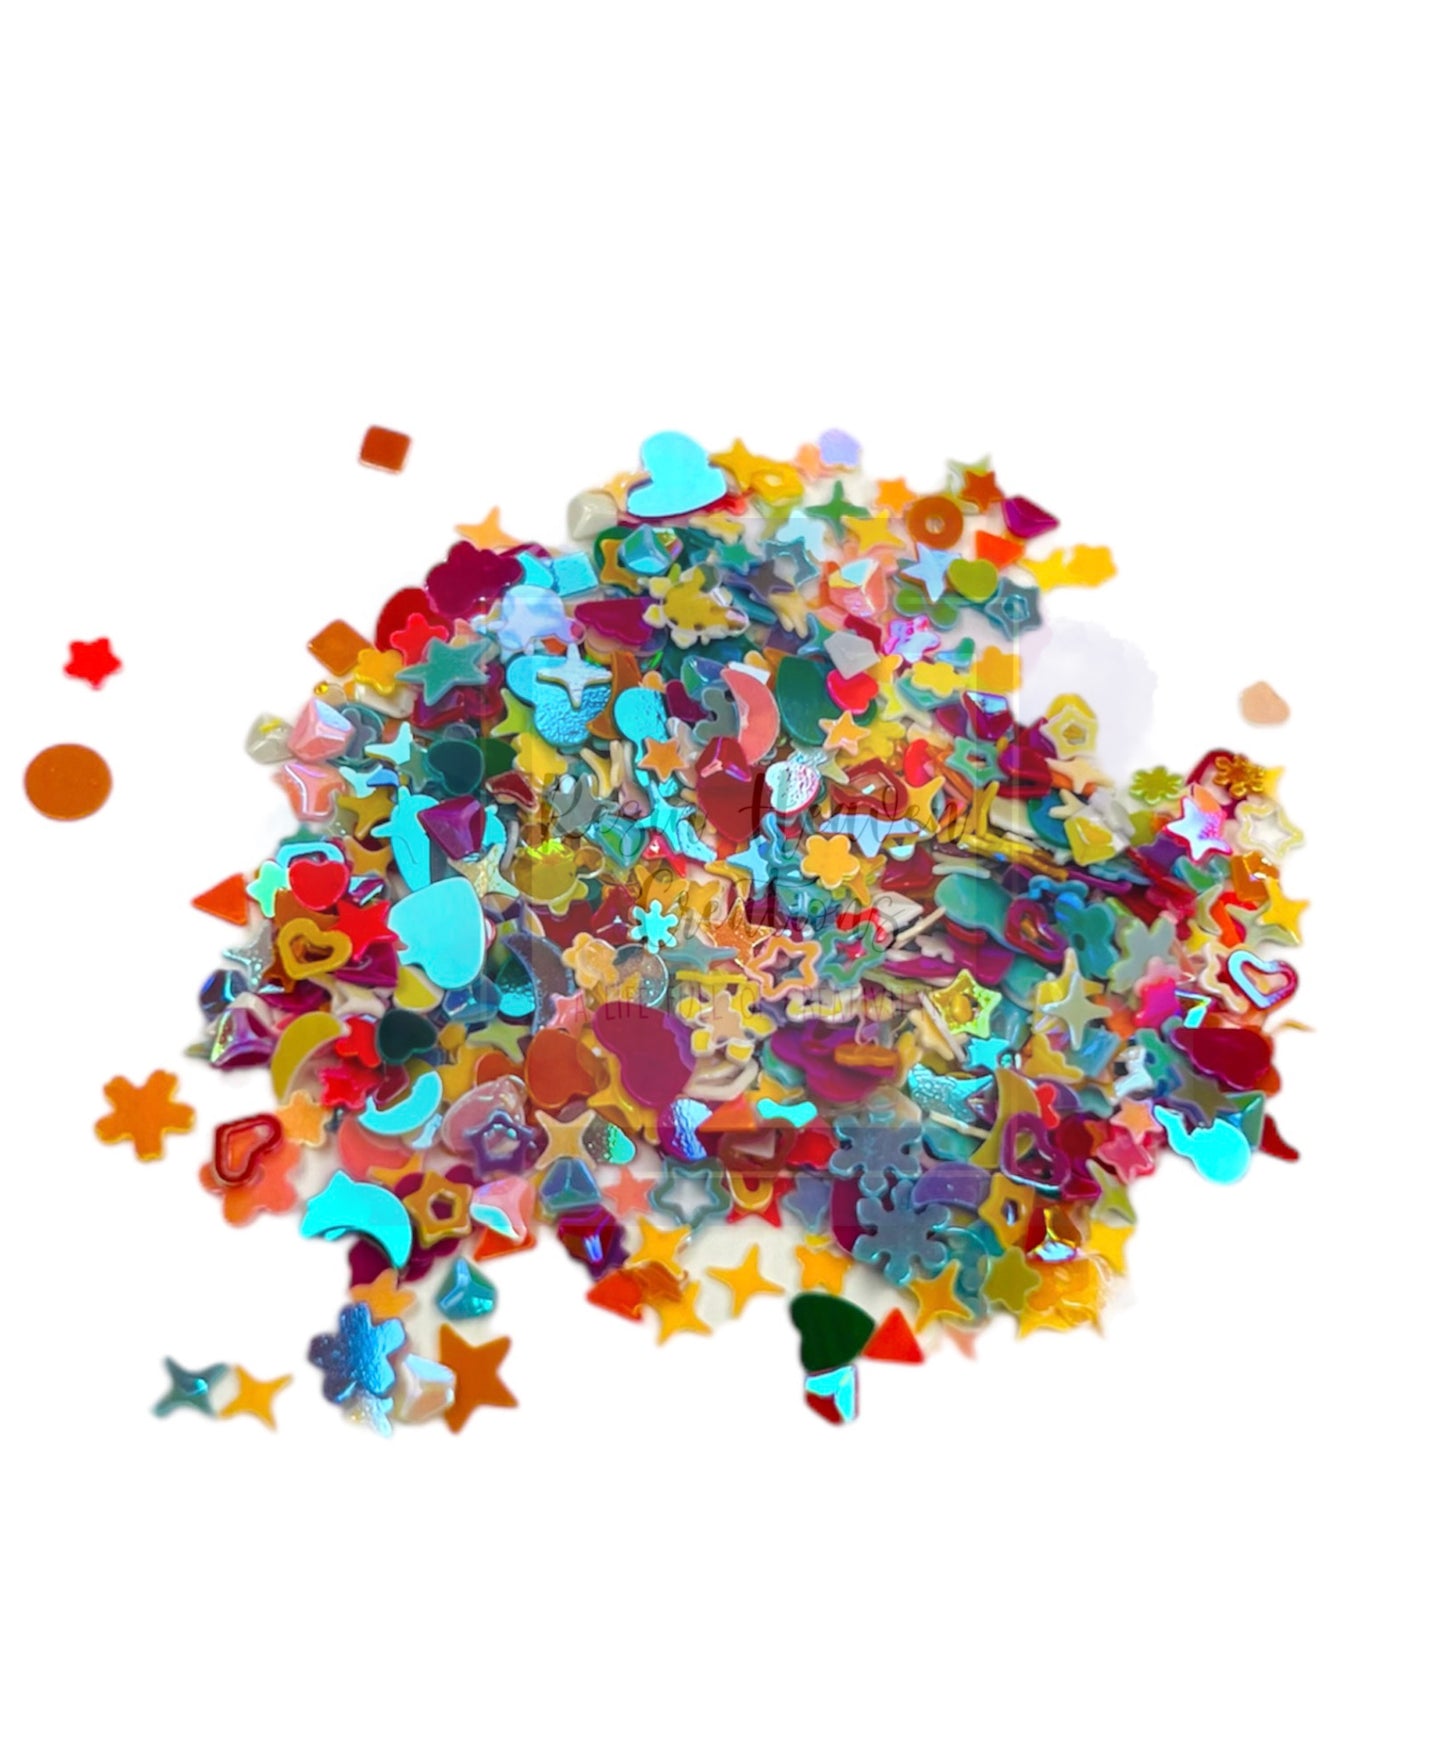 Multicolor Mixed Shapes (Confetti)